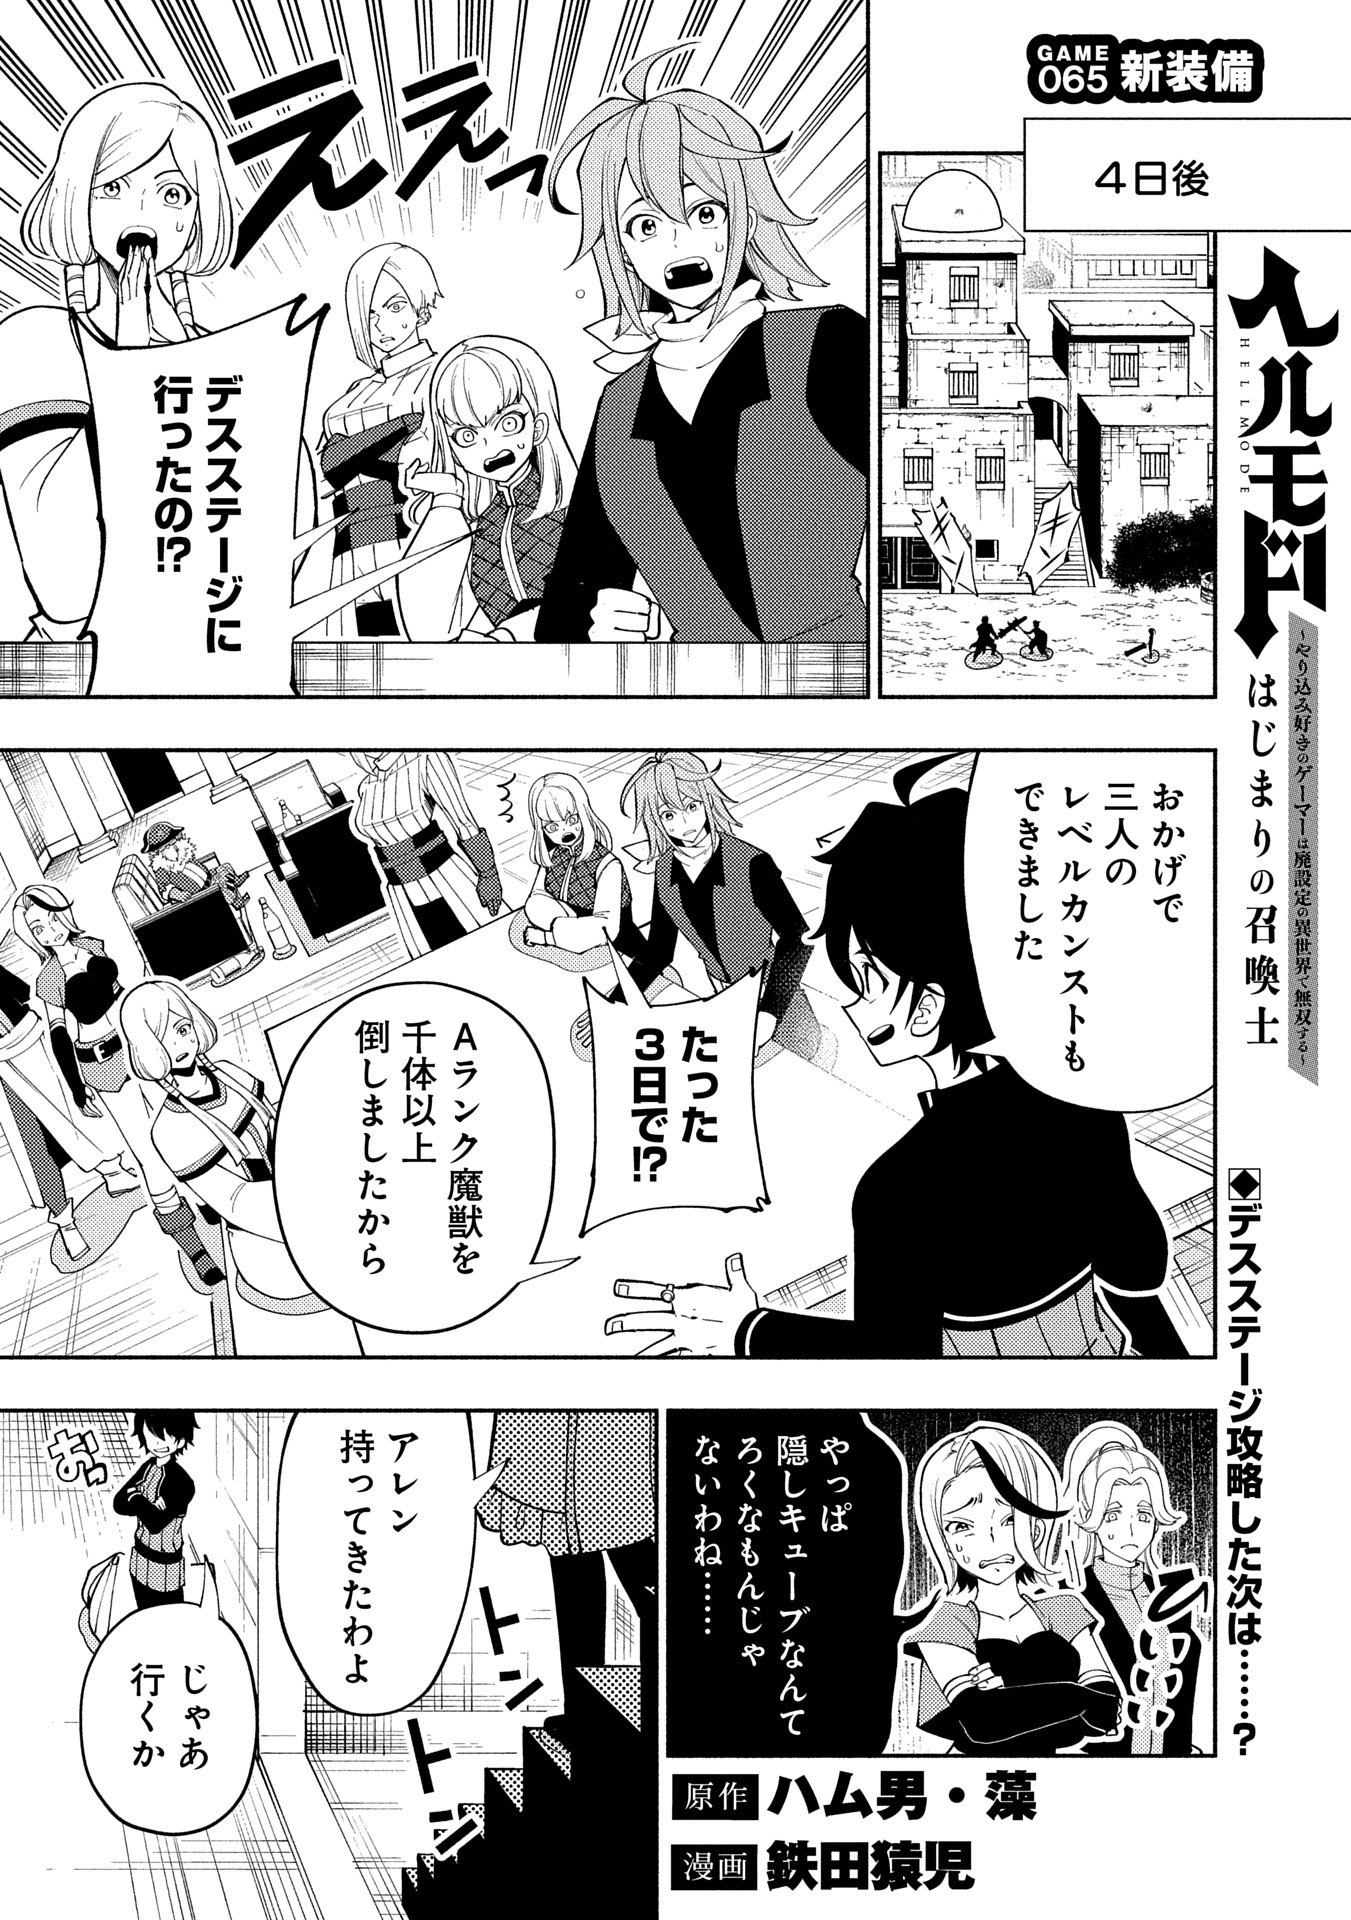 Hell Mode: Yarikomi Suki no Gamer wa Hai Settei no Isekai de Musou Suru - Chapter 65 - Page 1